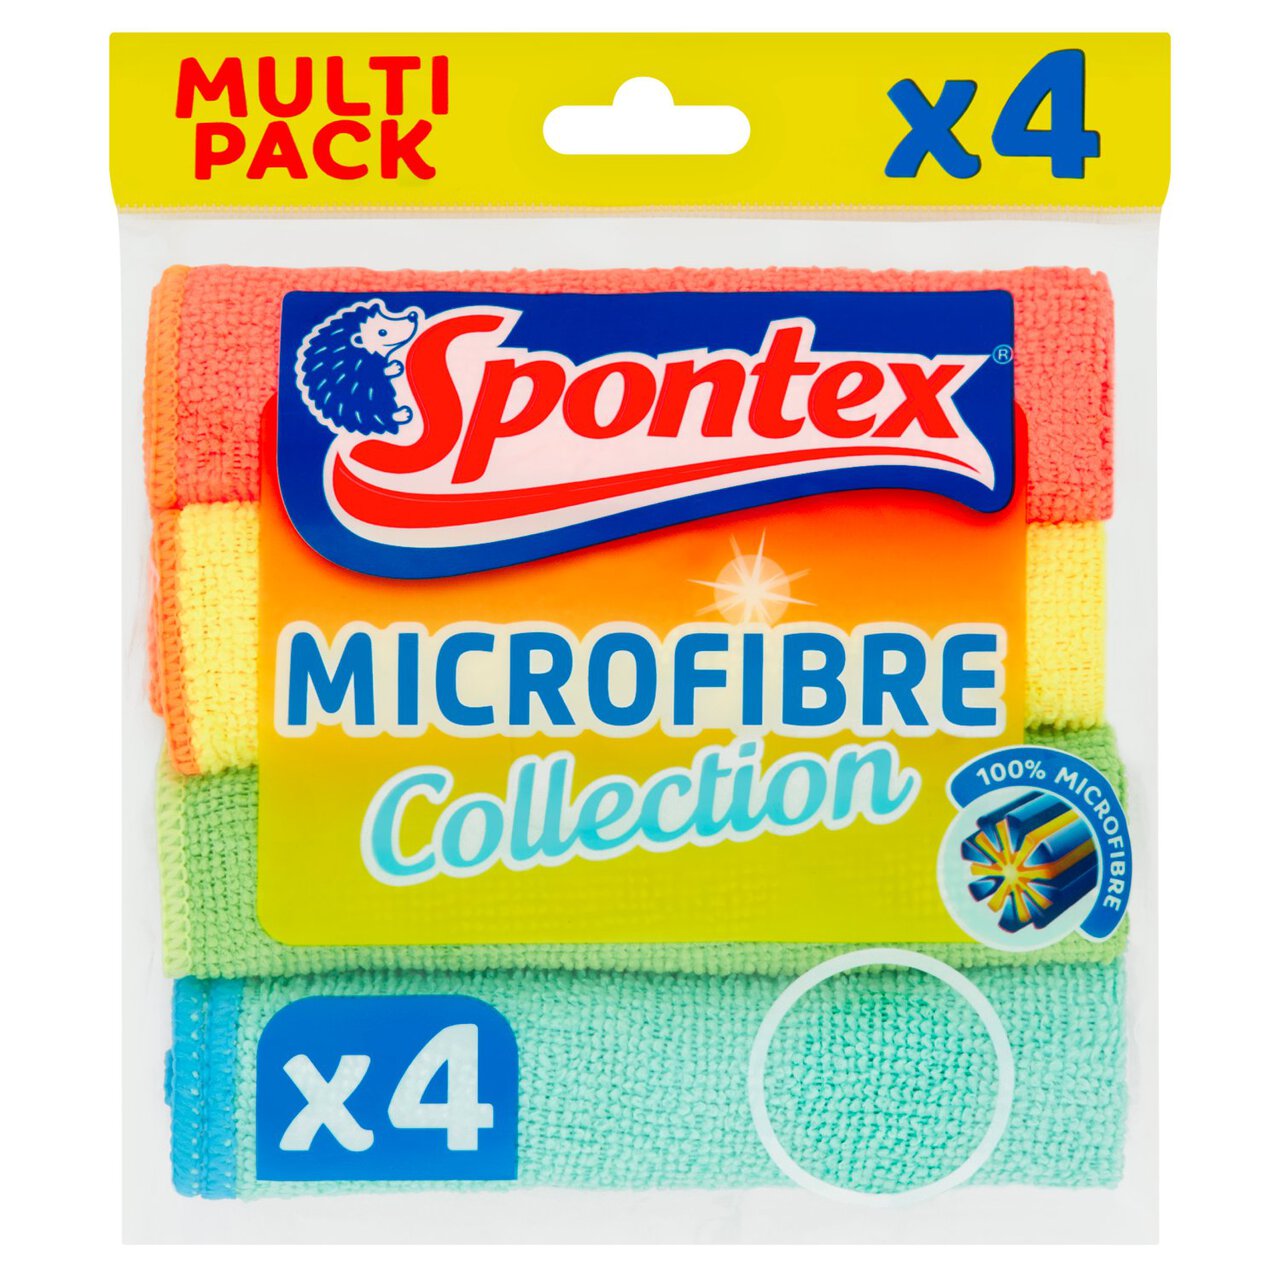 Spontex Microfibre Cloths Value Pack 4 per pack